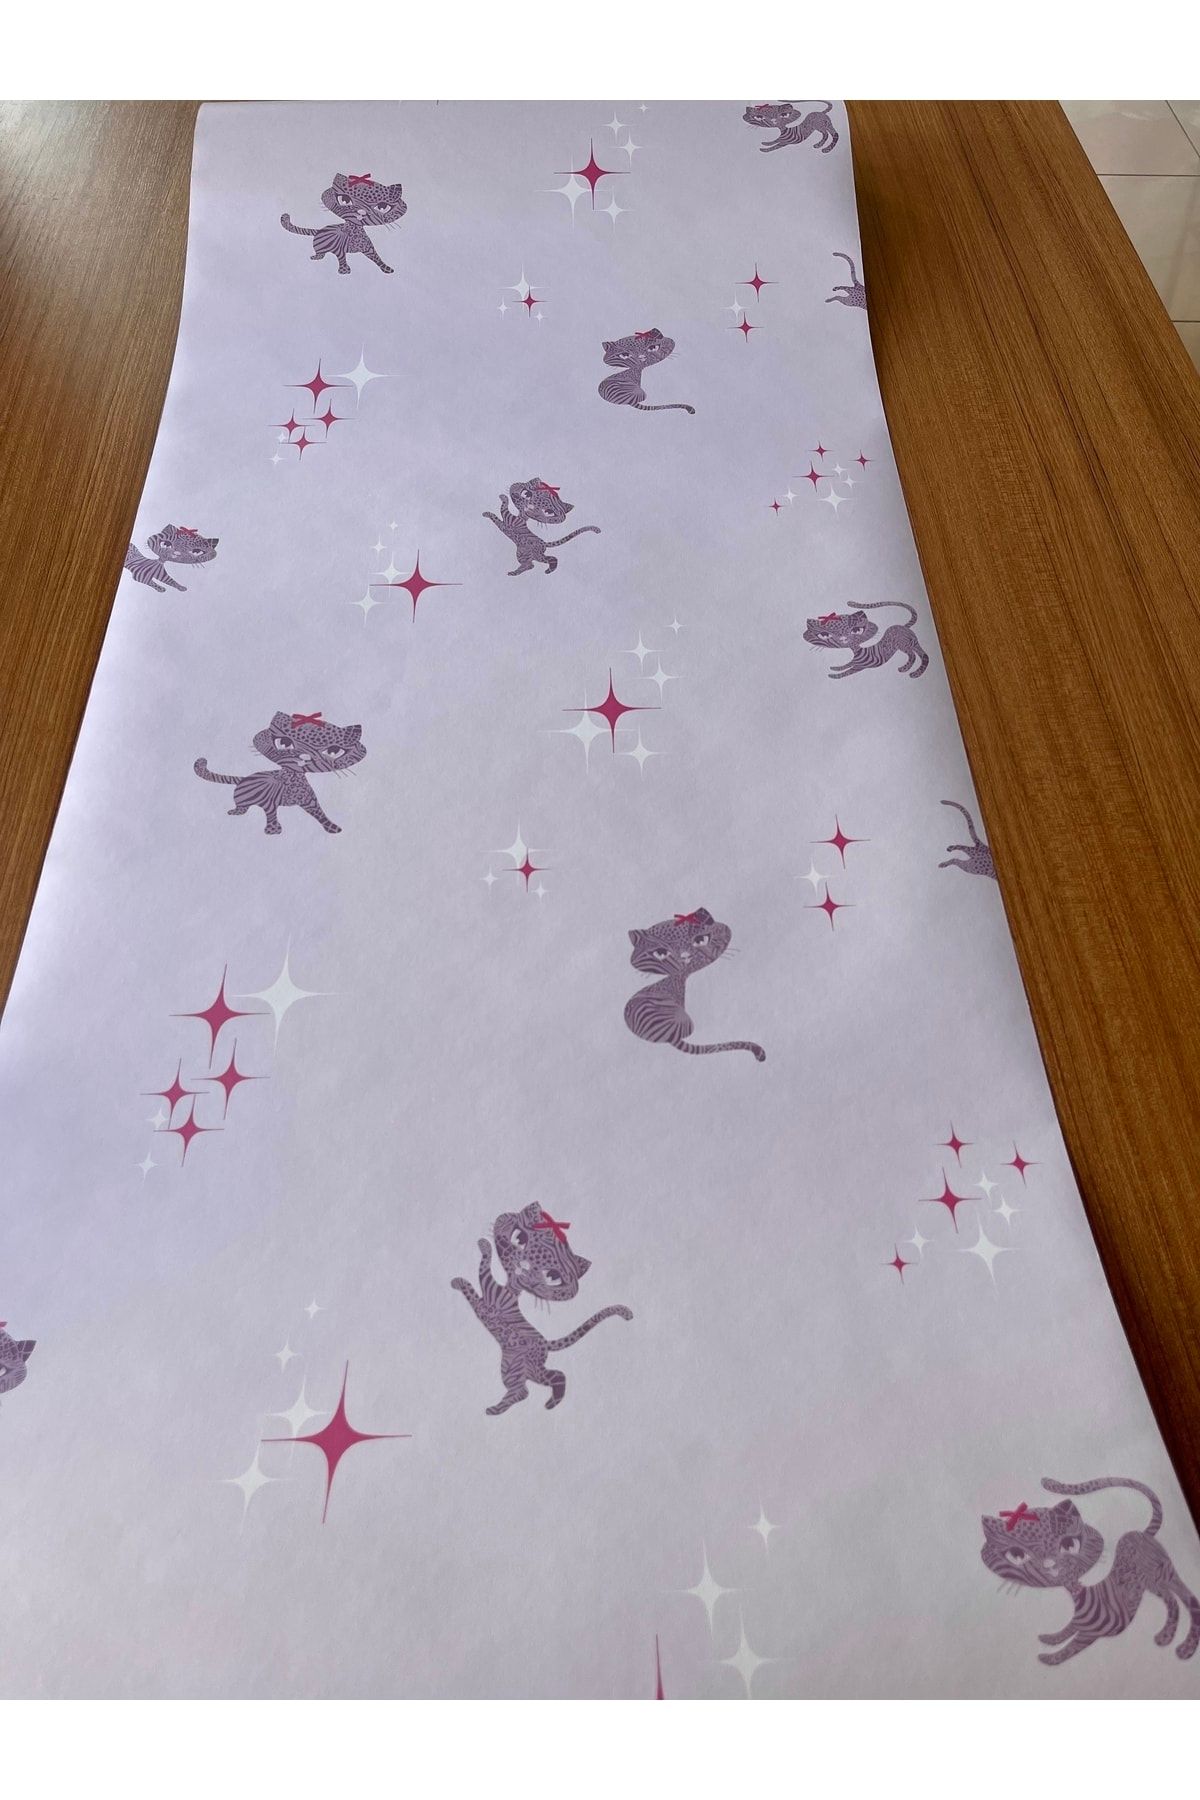 BAŞYAPI DİZAYN Mor Kedi Desenli Çocuk-bebek Odası Ithal Duvar Kağıdı (5m²)